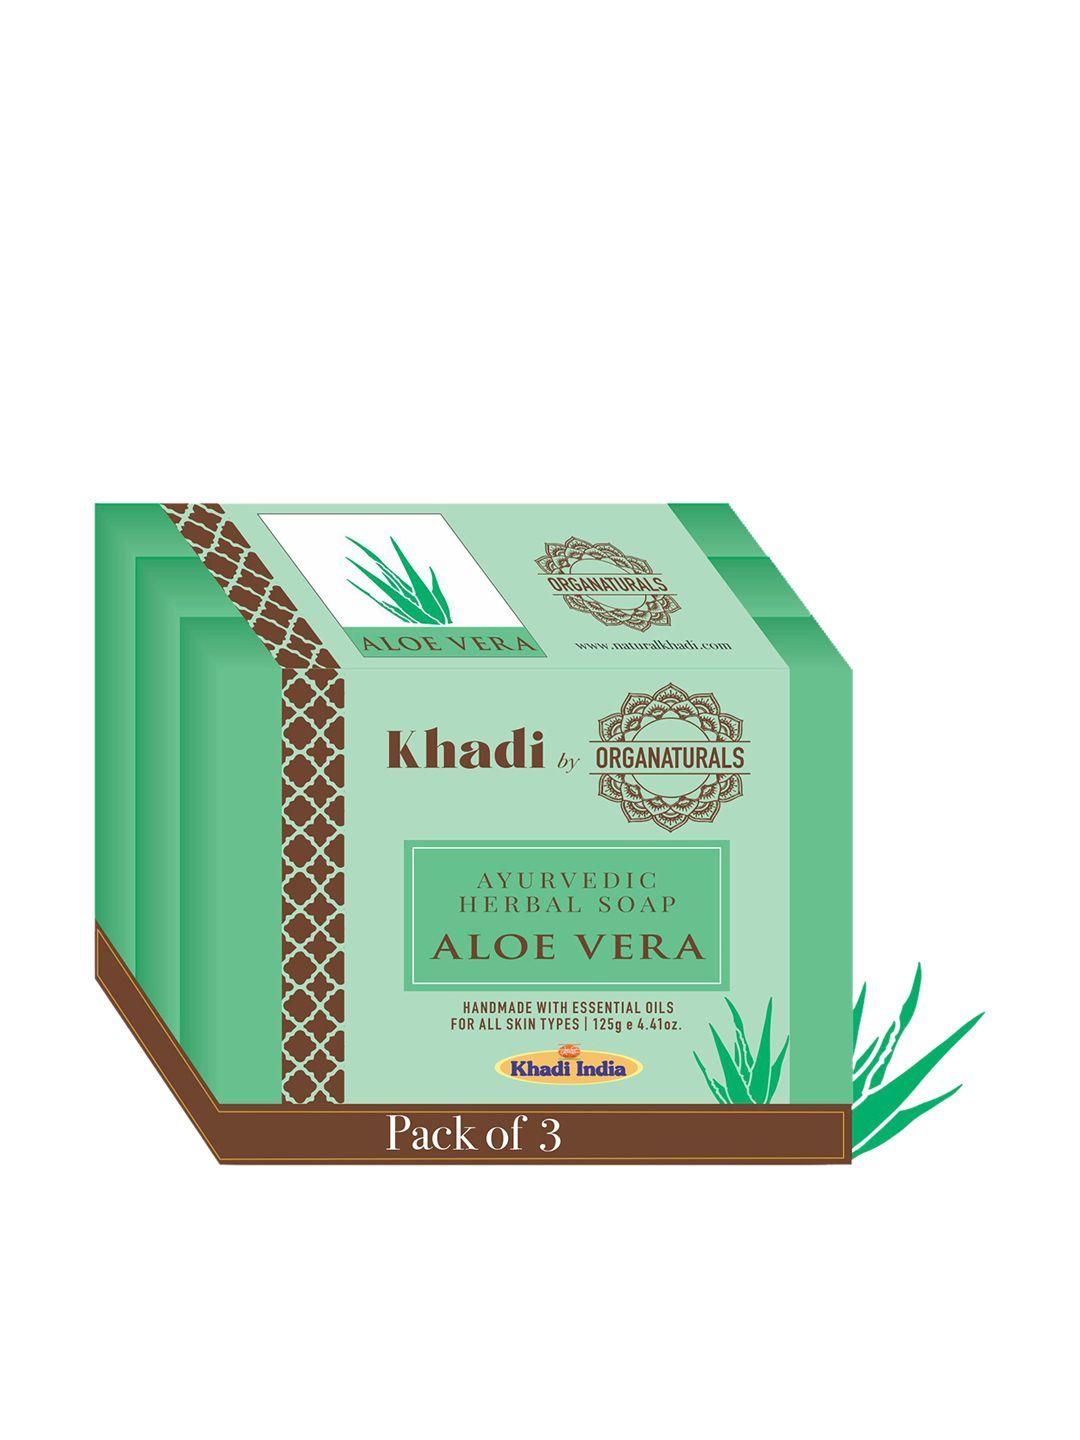 organaturals khadi set of 3 aloe vera ayurvedic herbal soaps - 125g each